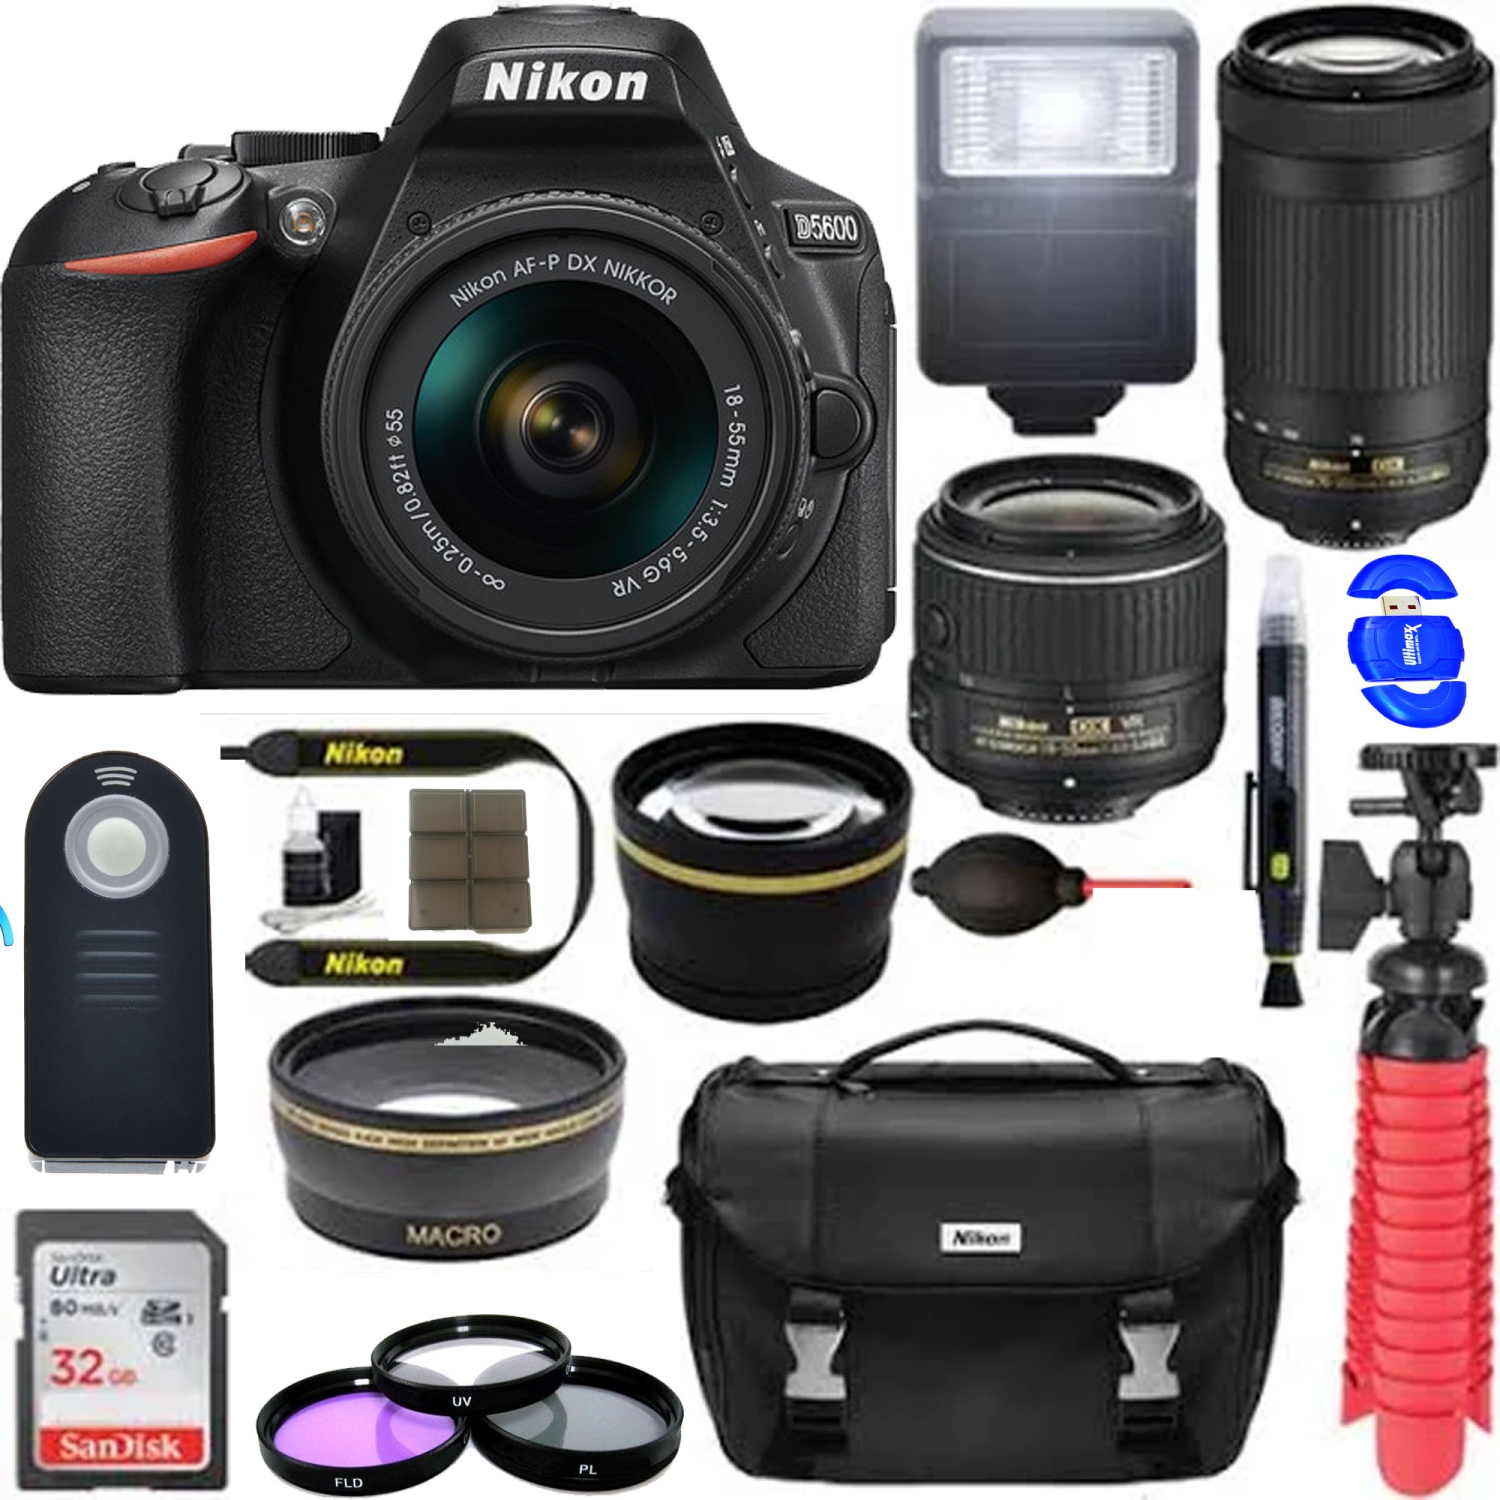 Nikon D5600 24.2 MP DSLR Camera + AF-P DX 18-55mm & 70-300mm NIKKOR Zoom Lens Kit + Accessory Bundle - US Version w/ Seller Warranty